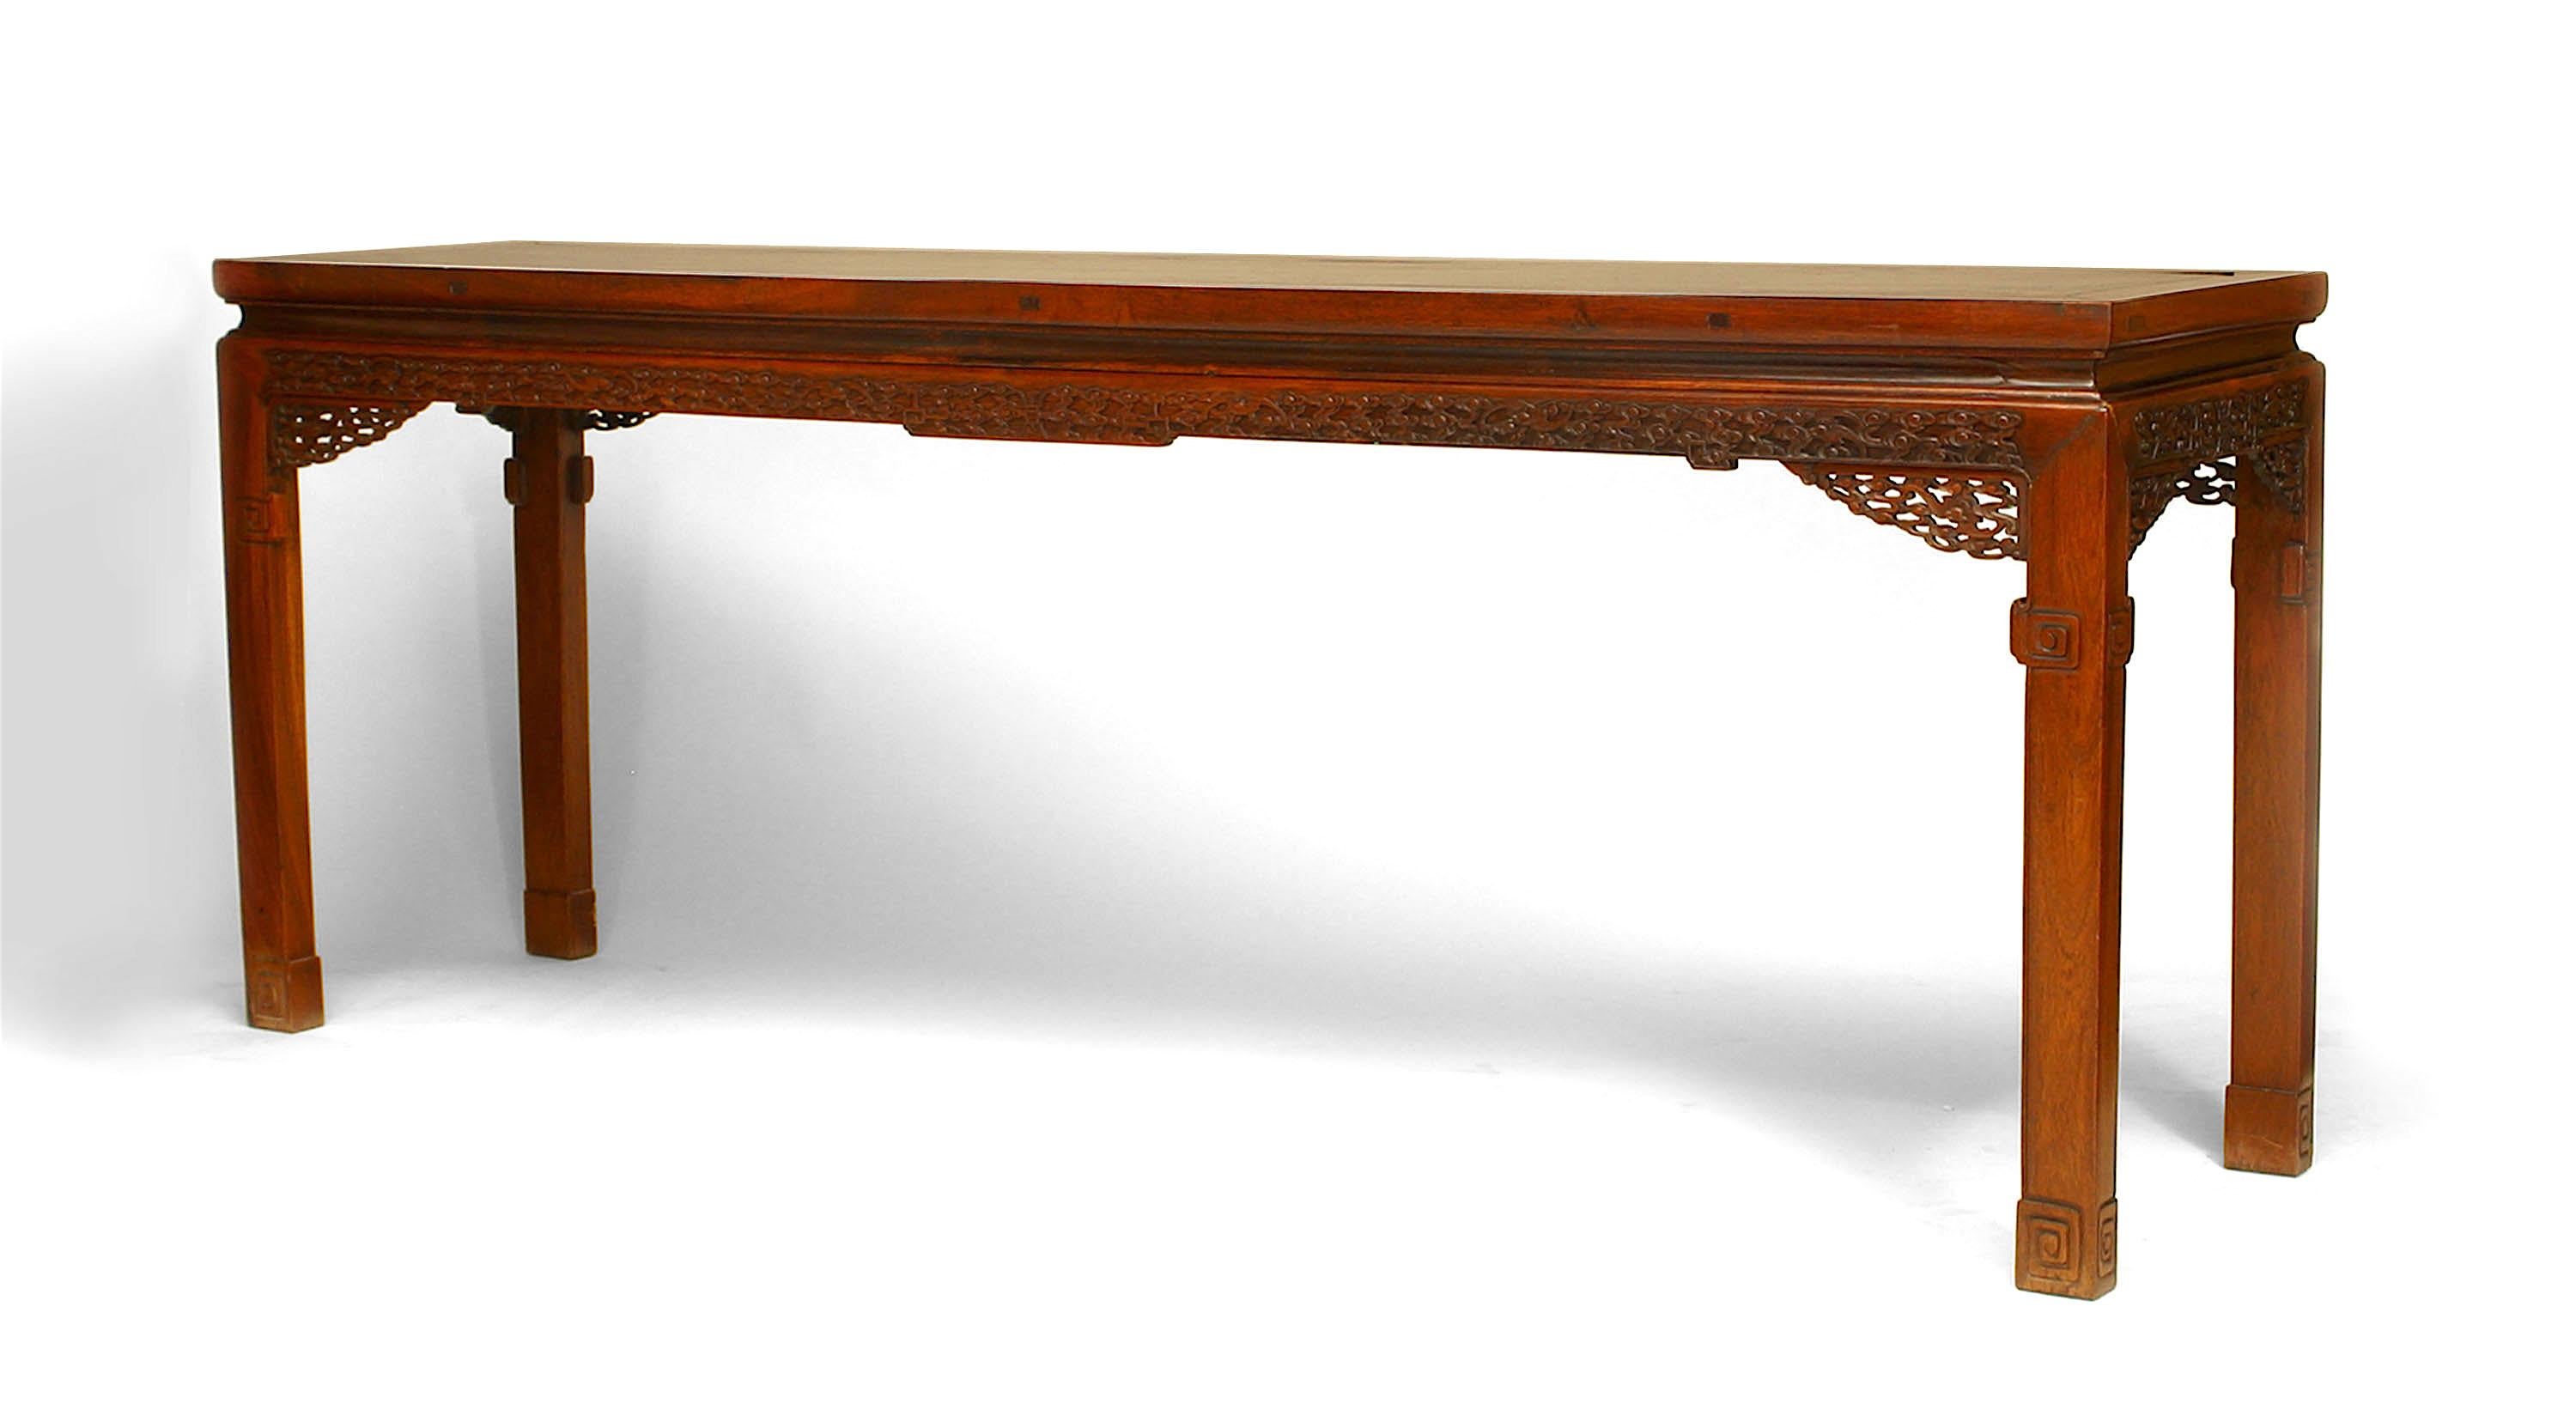 Grande table console à volutes en bois dur de style chinois asiatique (dynastie Qing-18/19e siècle) avec tablier finement sculpté sur tous les côtés et coins en filigrane.
